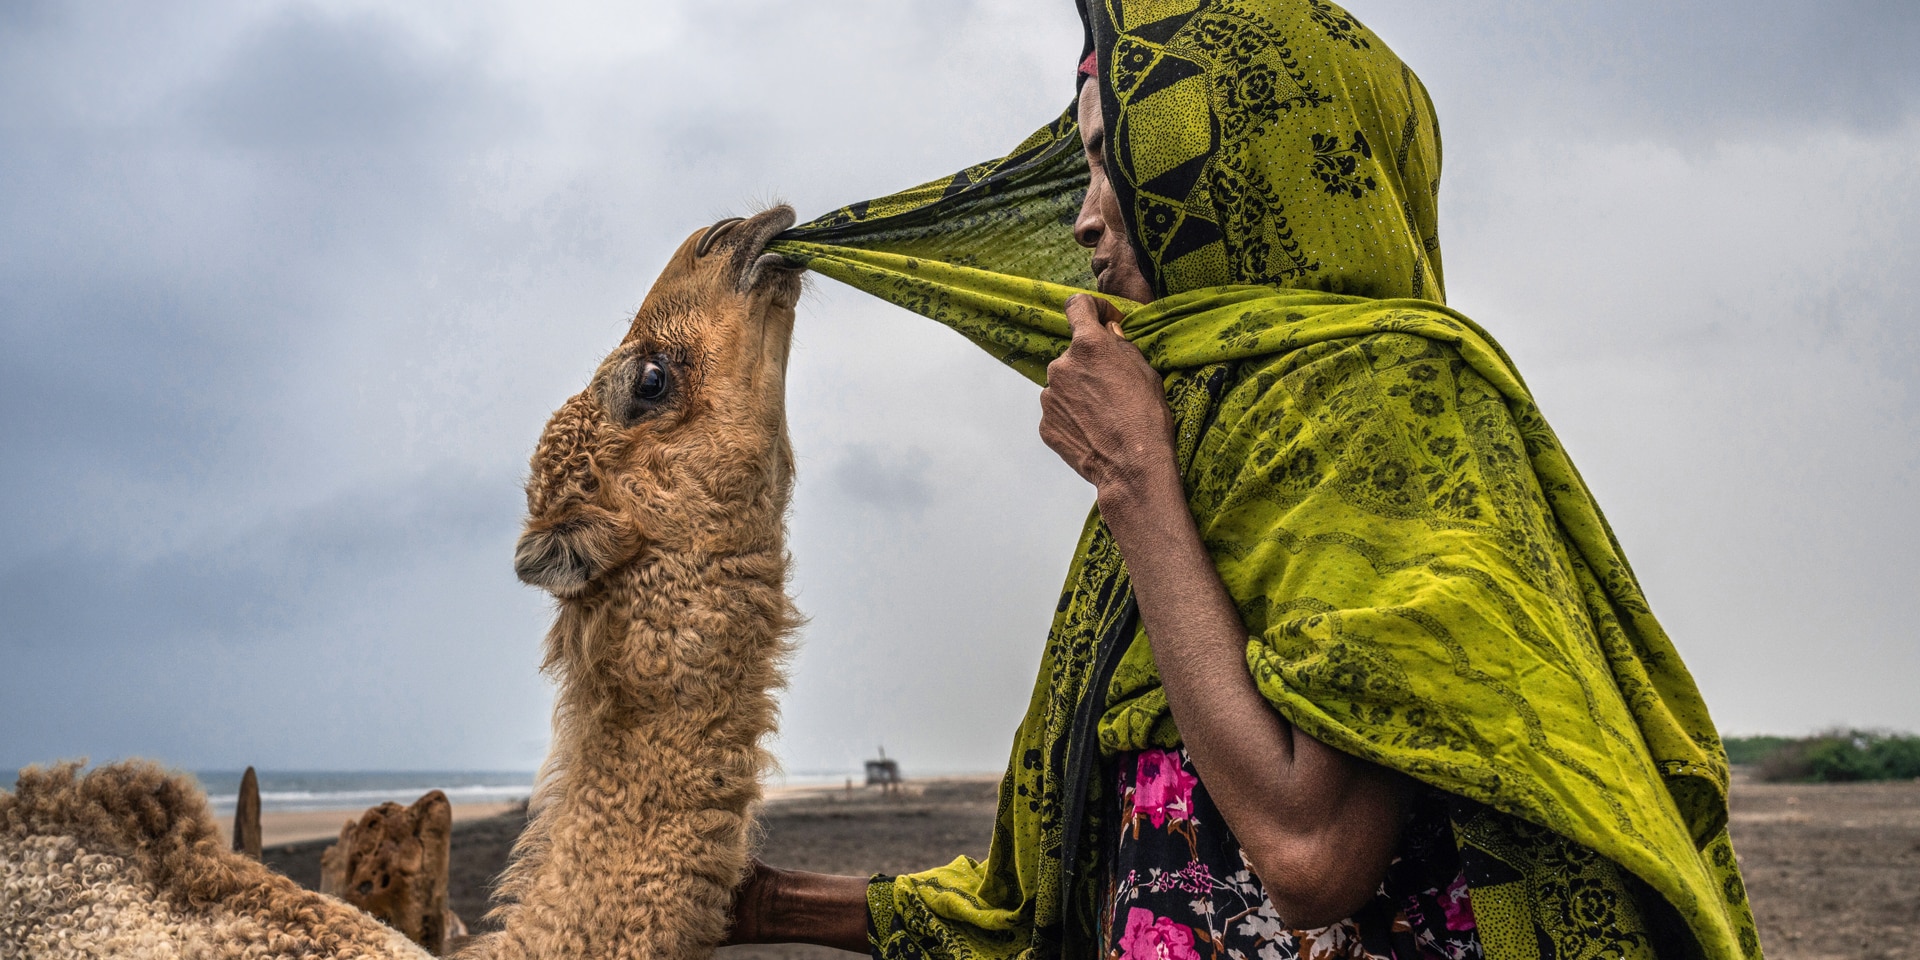 Kamel knabbert am grünen Kopftuch einer Frau. Die Frau hält mit einer Hand das Kopftuch beim Kinn fest und streichelt mit der anderen Hand das Kamel.